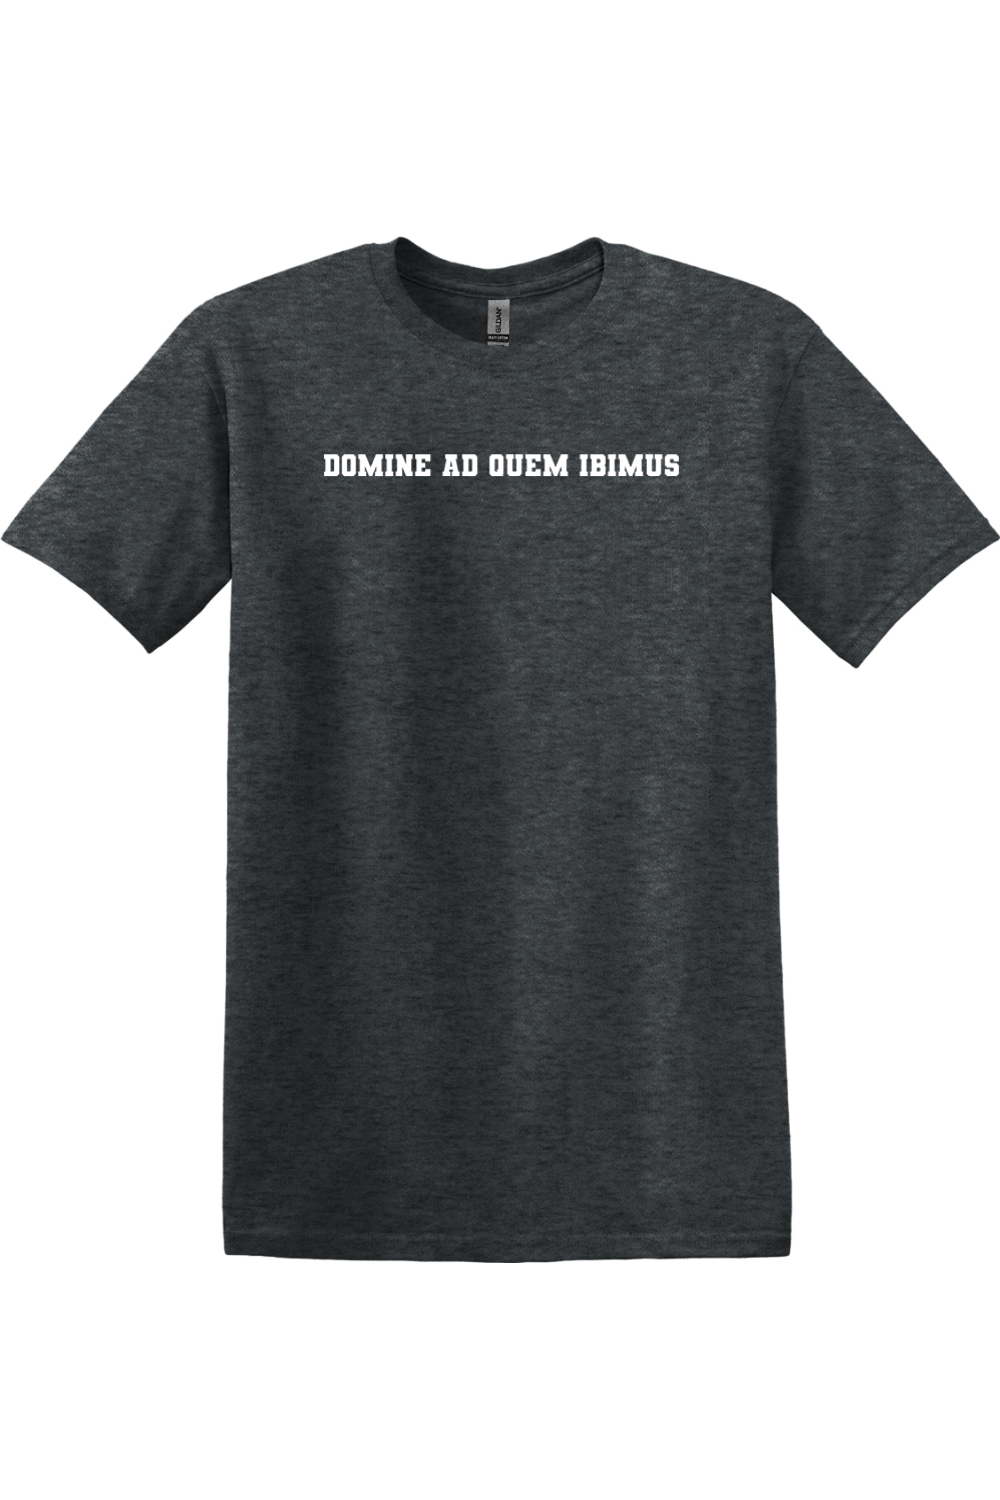 Domine Ad Quem Ibimus T-shirt - block text